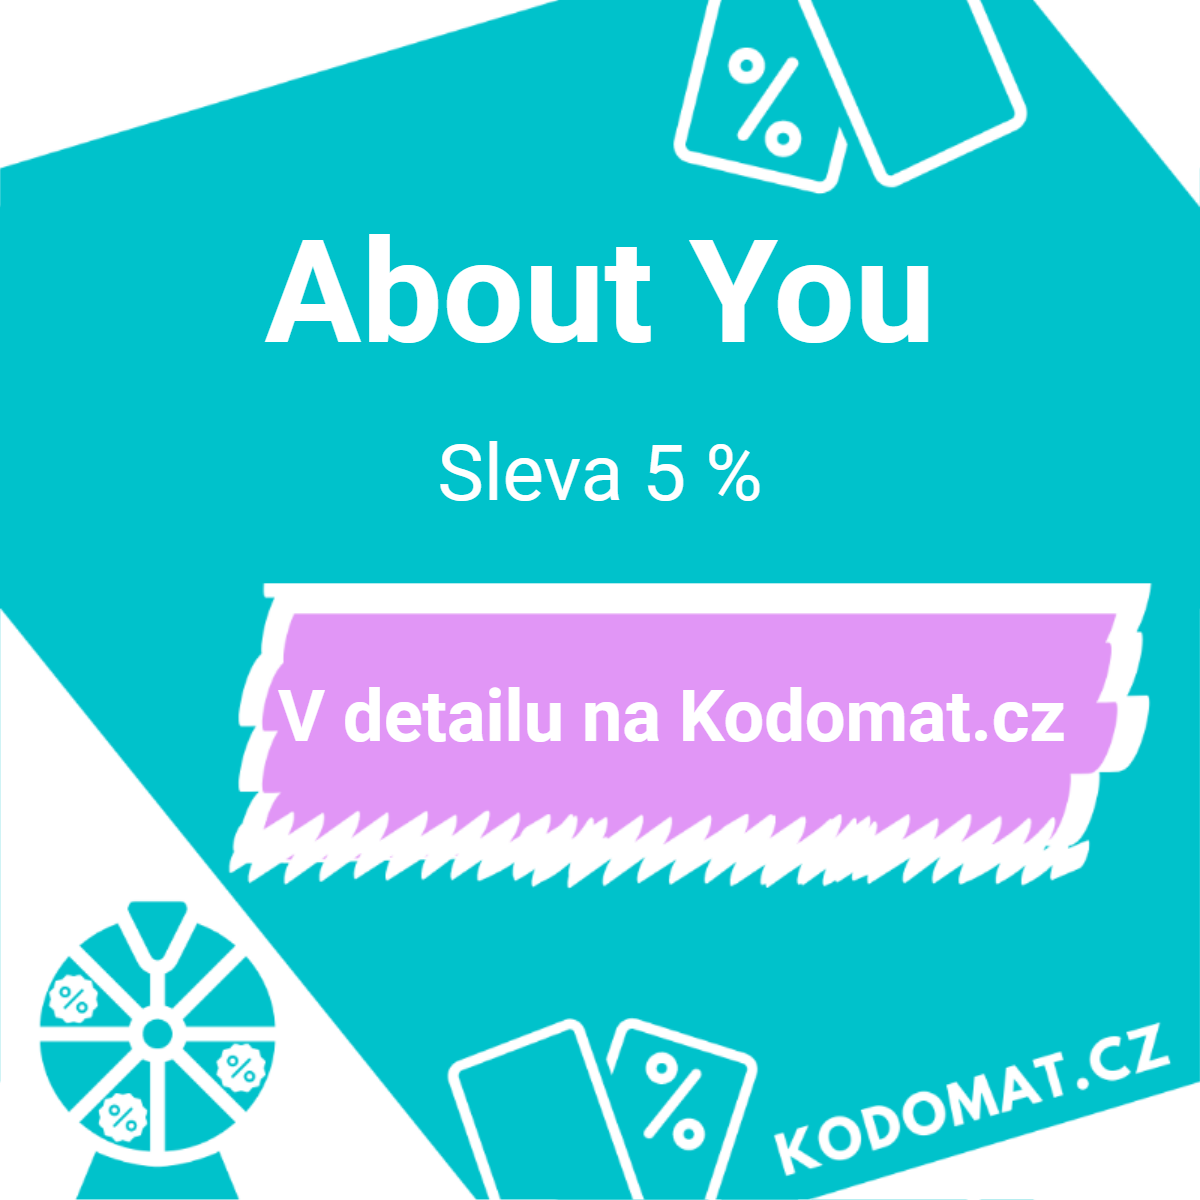 About You slevový kódínek od Andrejky: Sleva 5 %